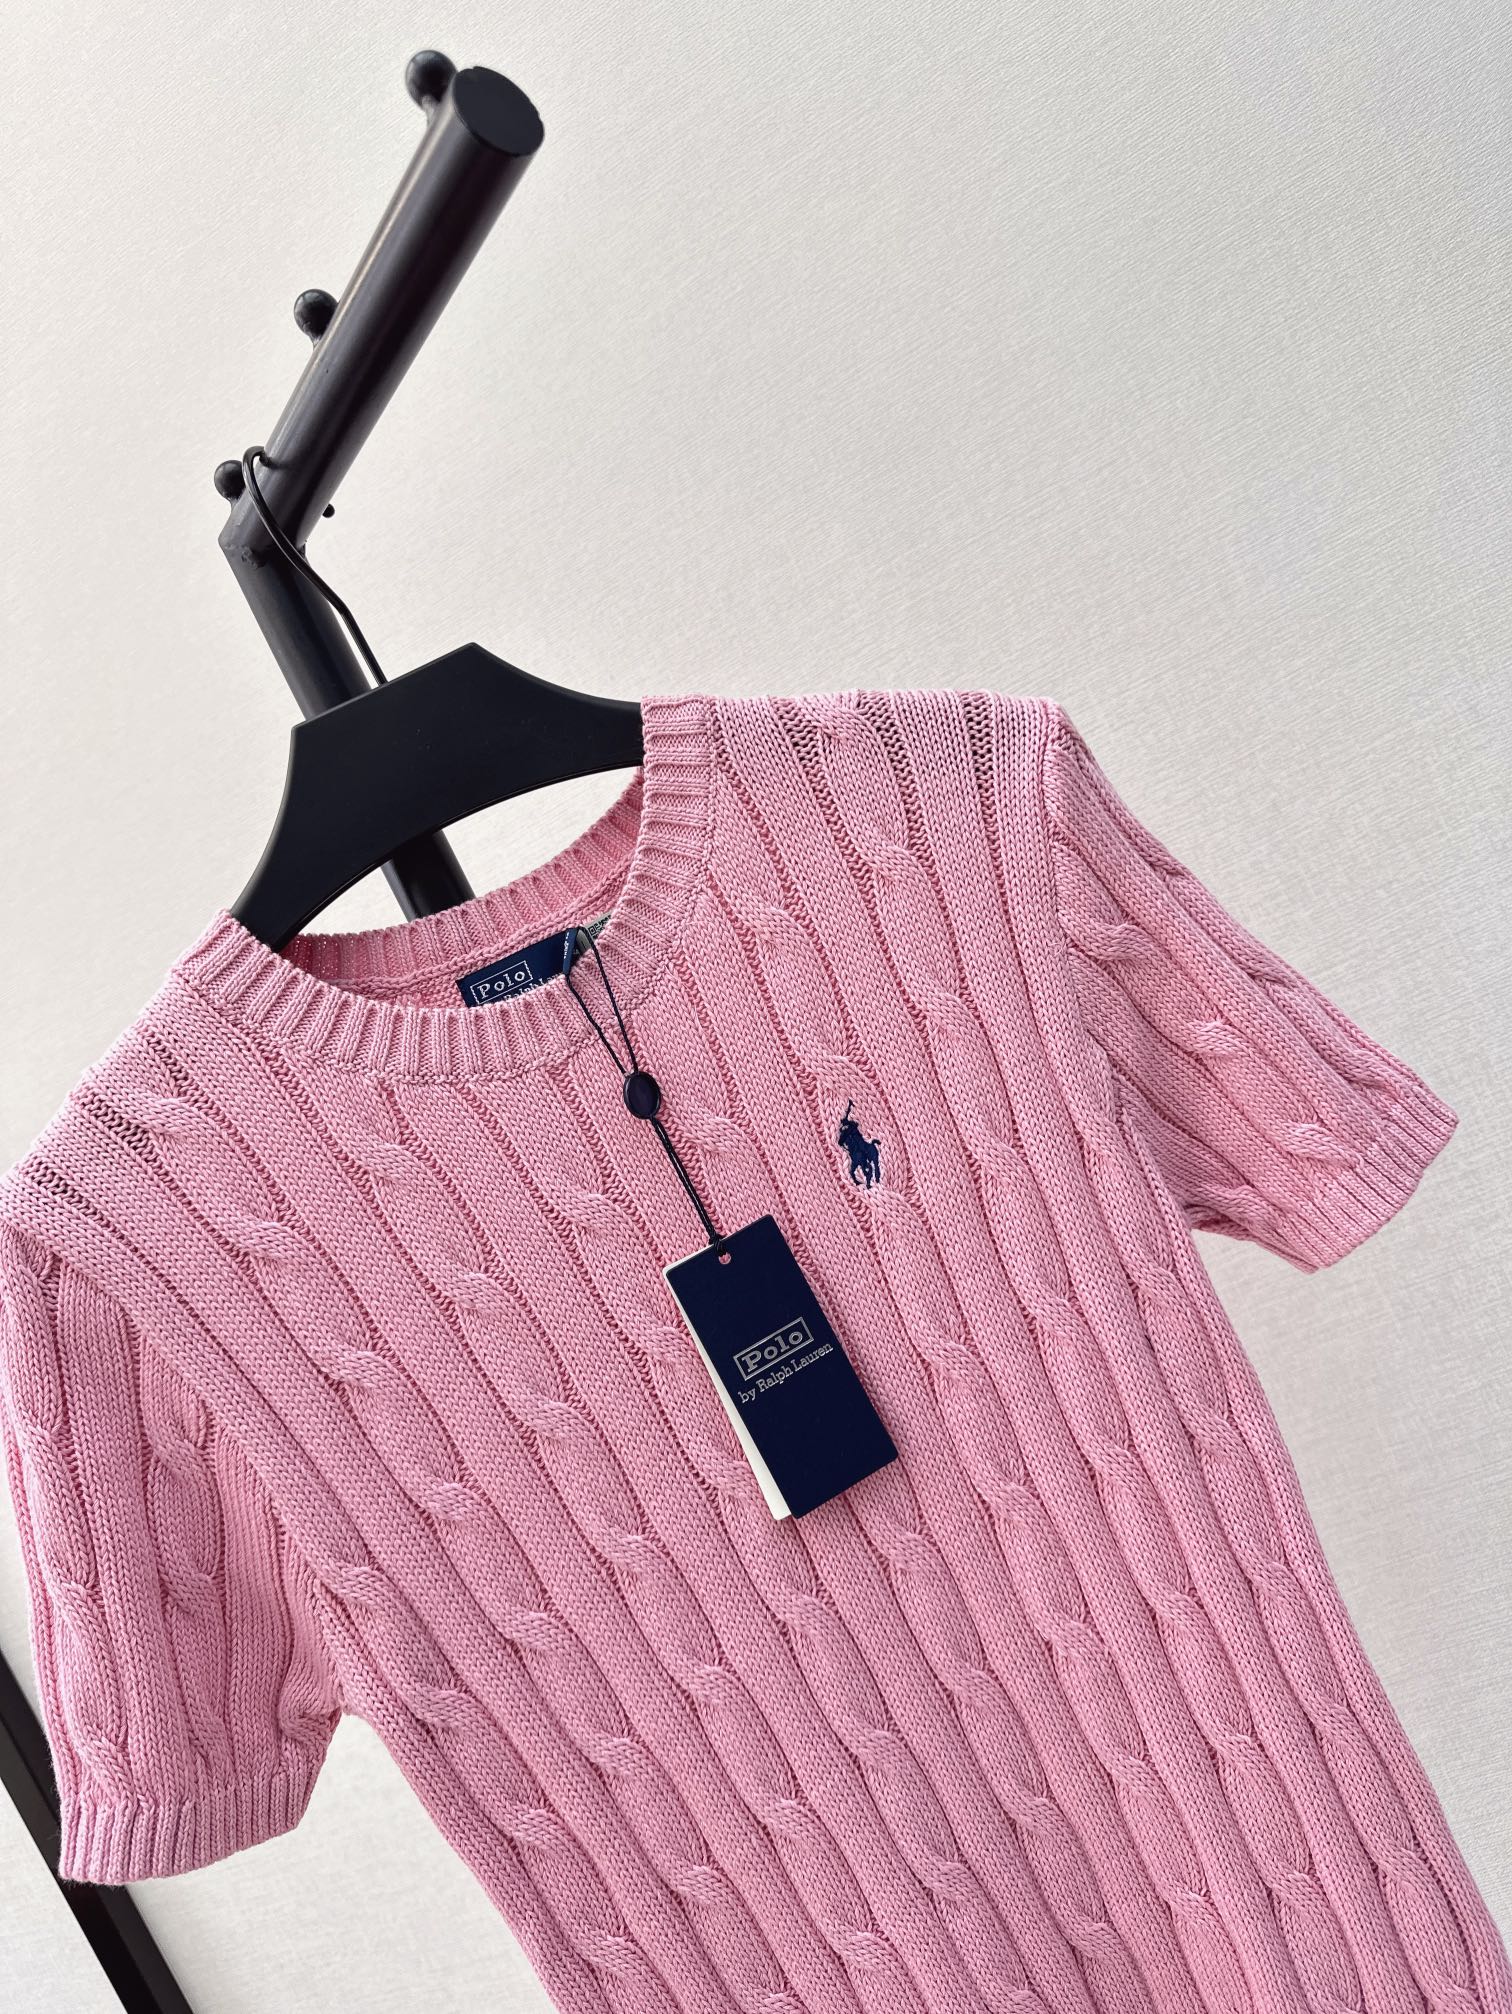 时髦单品24Ss春夏最新经典款polo针织衫日常必备的百搭款品质版型都是一流的修身版型打底单穿都OK！精